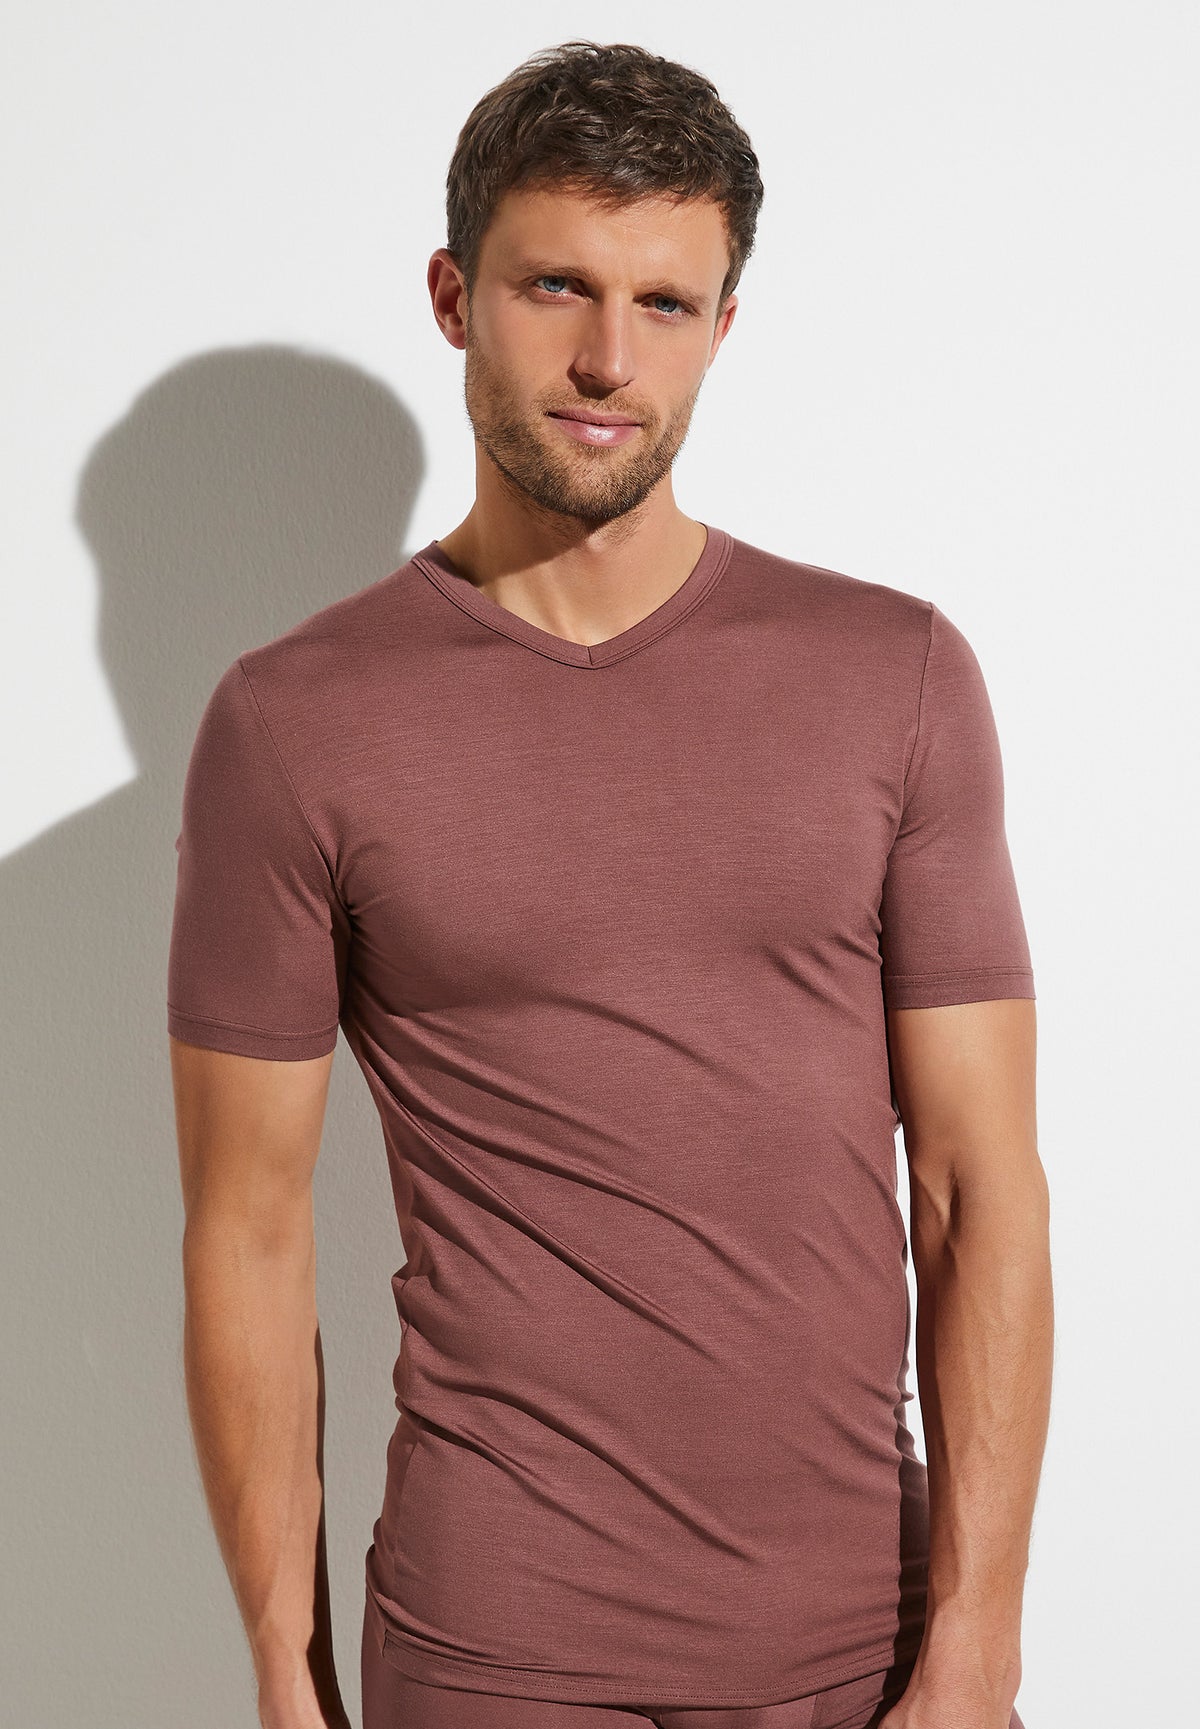 Pureness | T-Shirt kurzarm V-Ausschnitt - marron